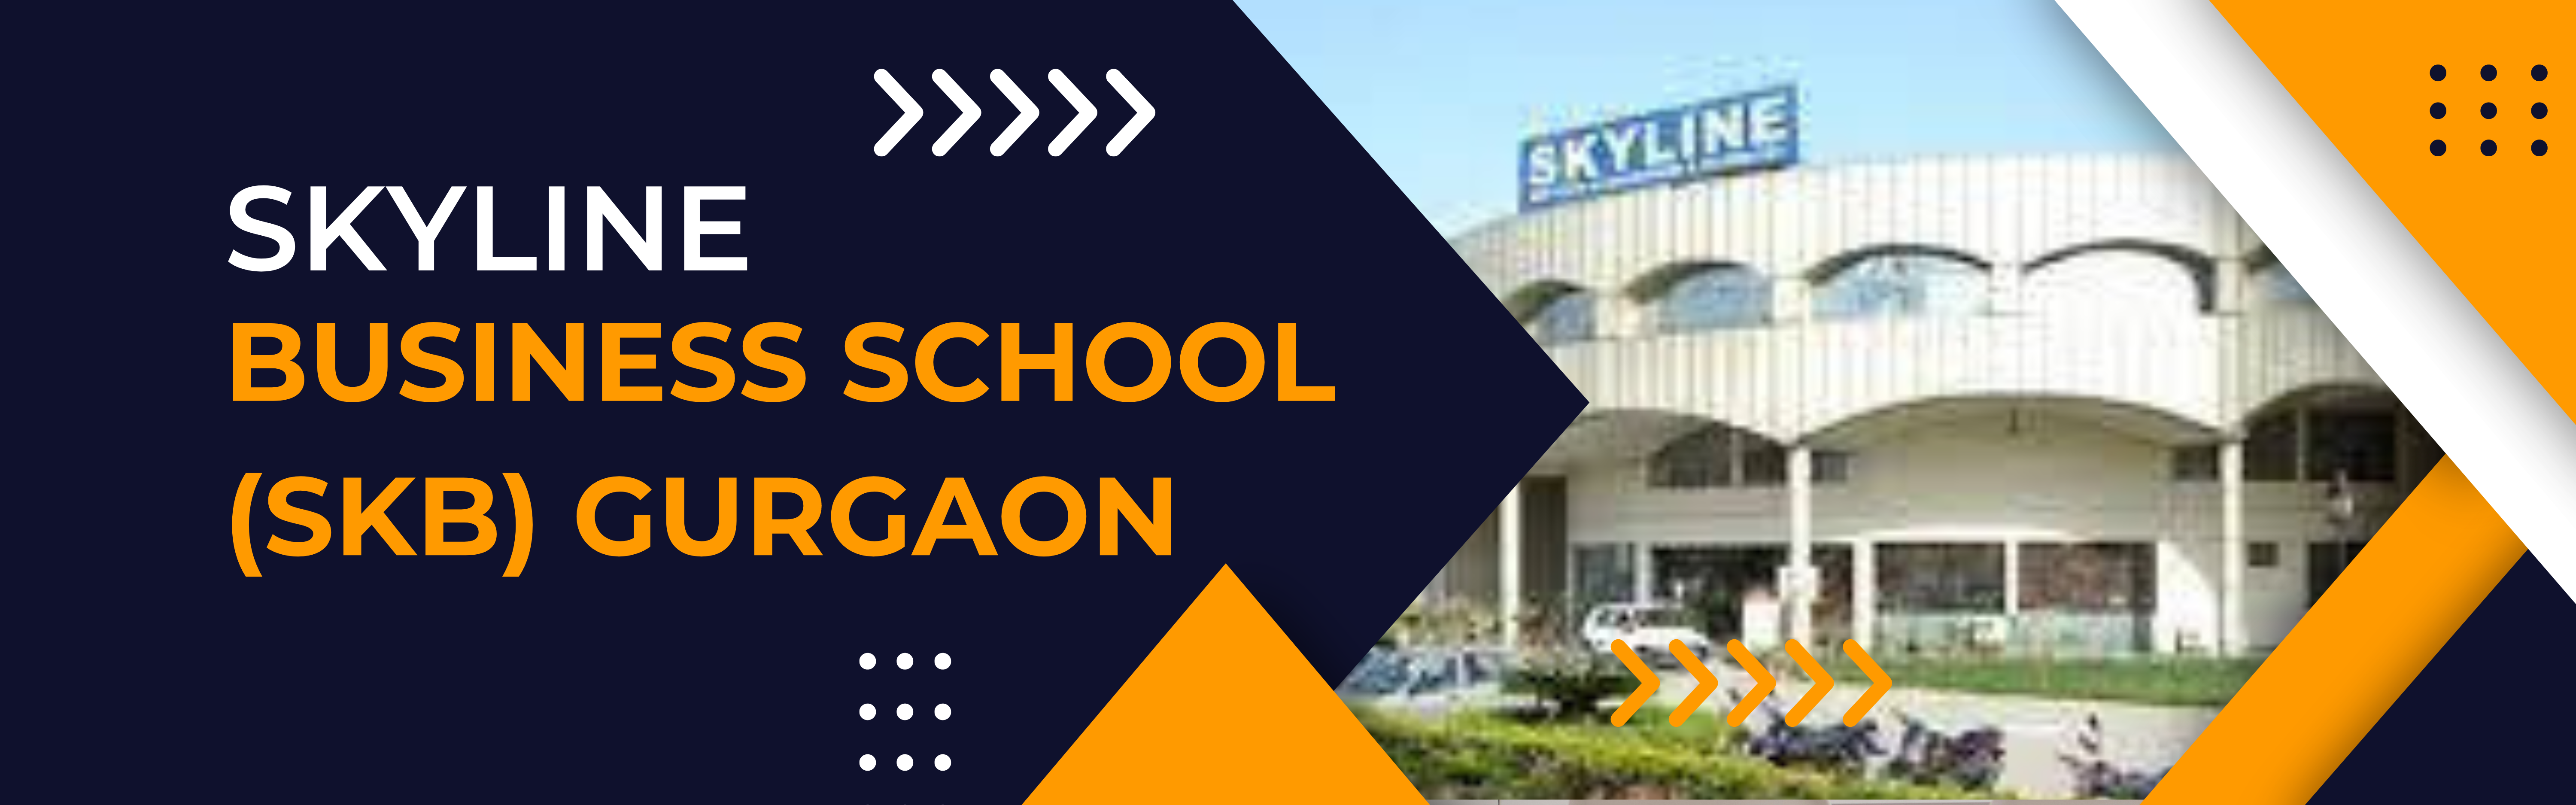 Skyline Business School - [SKB], Gurgaon